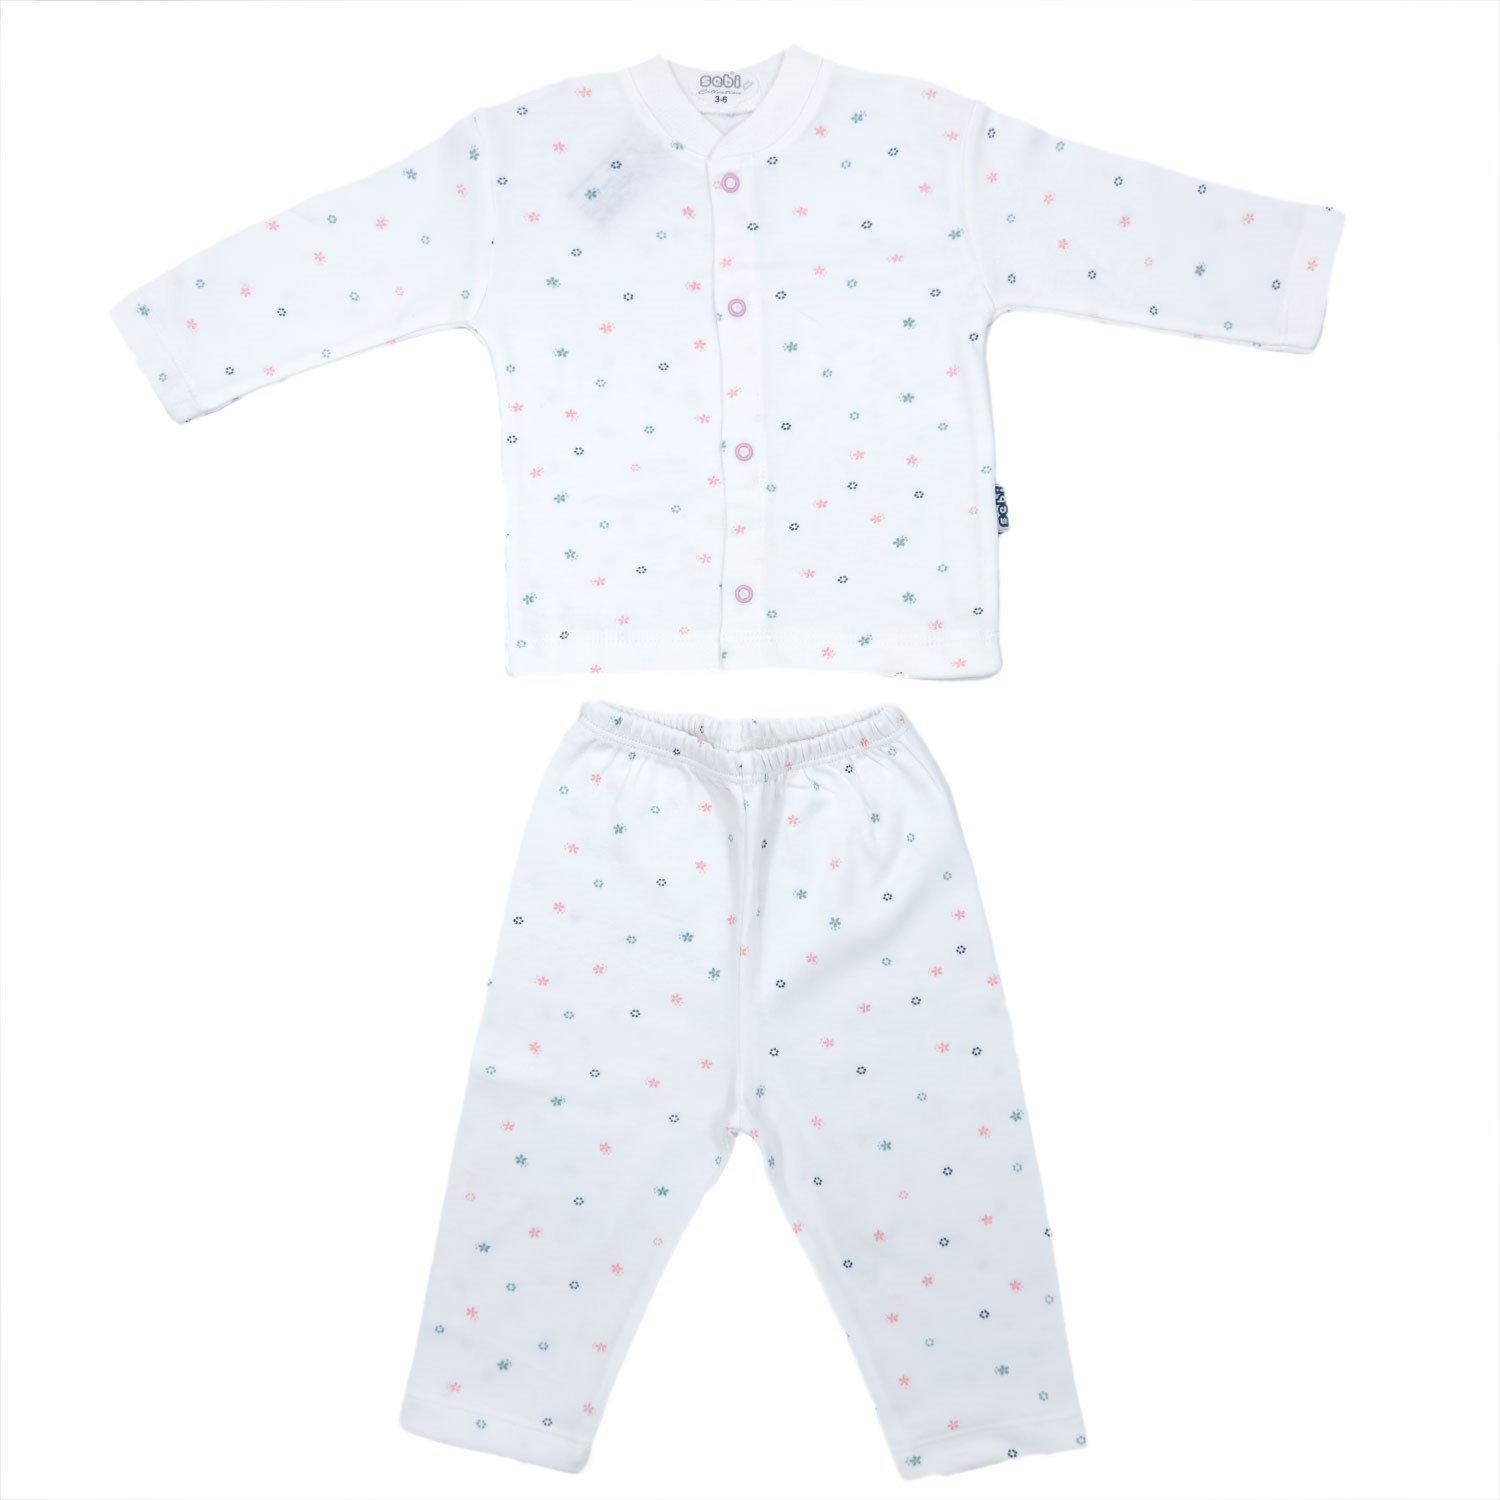 Sebi Bebe Çiçek Desenli Pijama Takımı 2553 Beyaz-Pembe